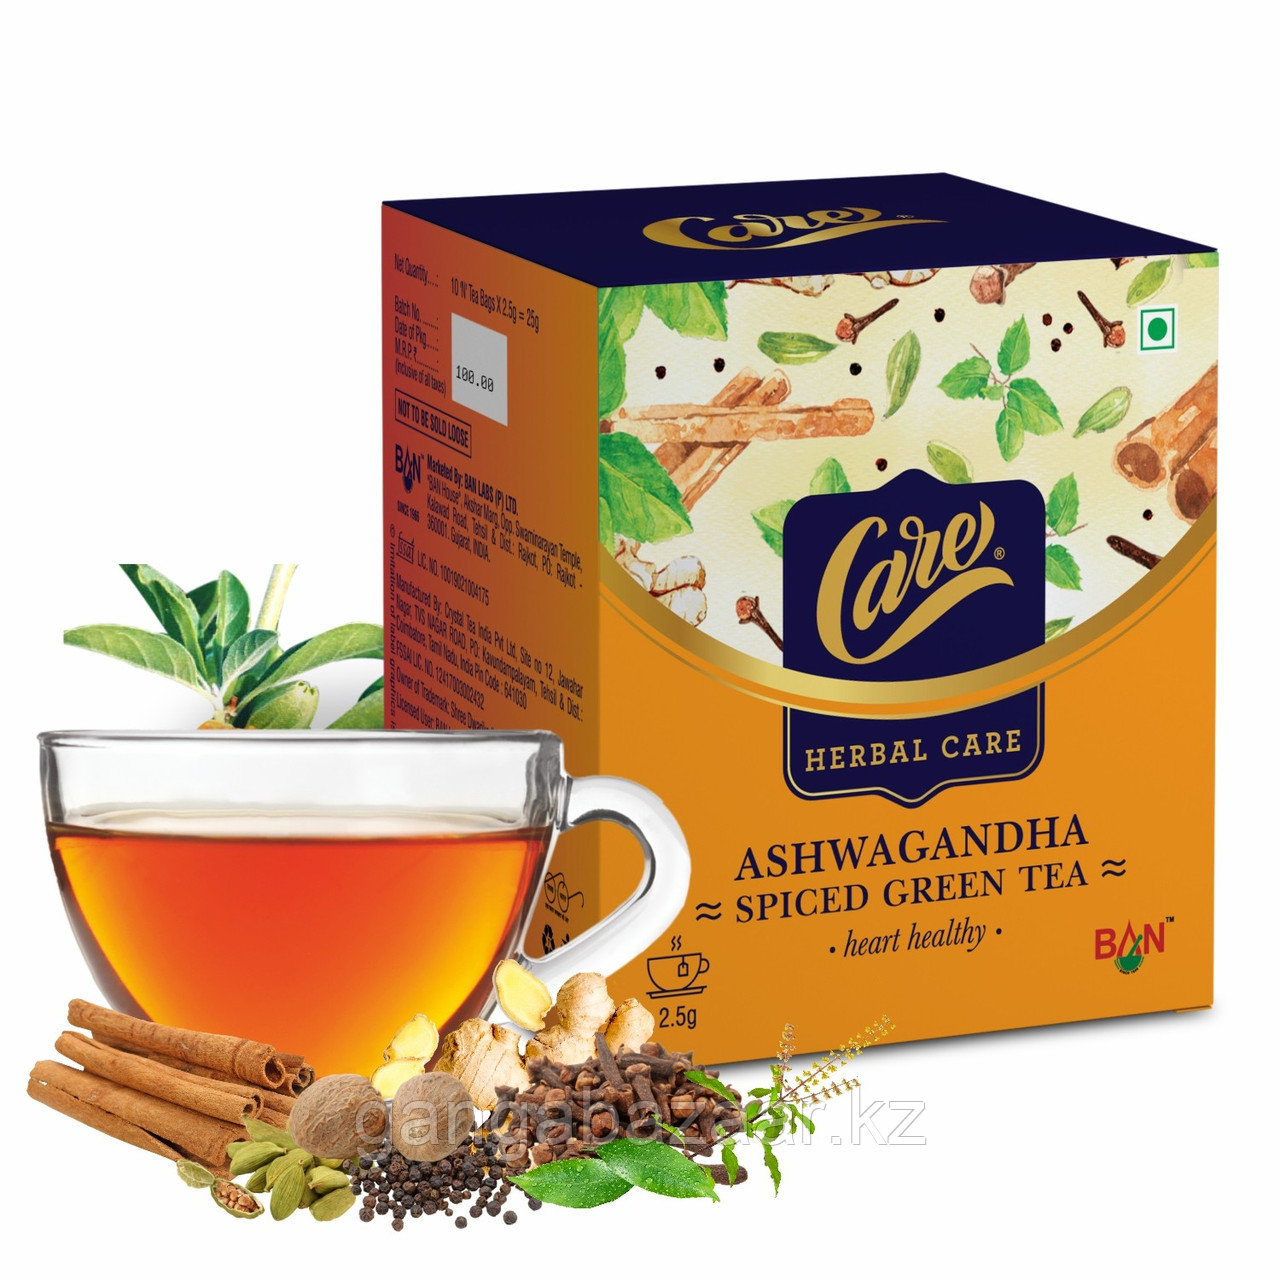 Зеленый чай Ашваганда (Care Ashwagandha Green Tea) - с аюрведическими травами для оздоровления всего организма